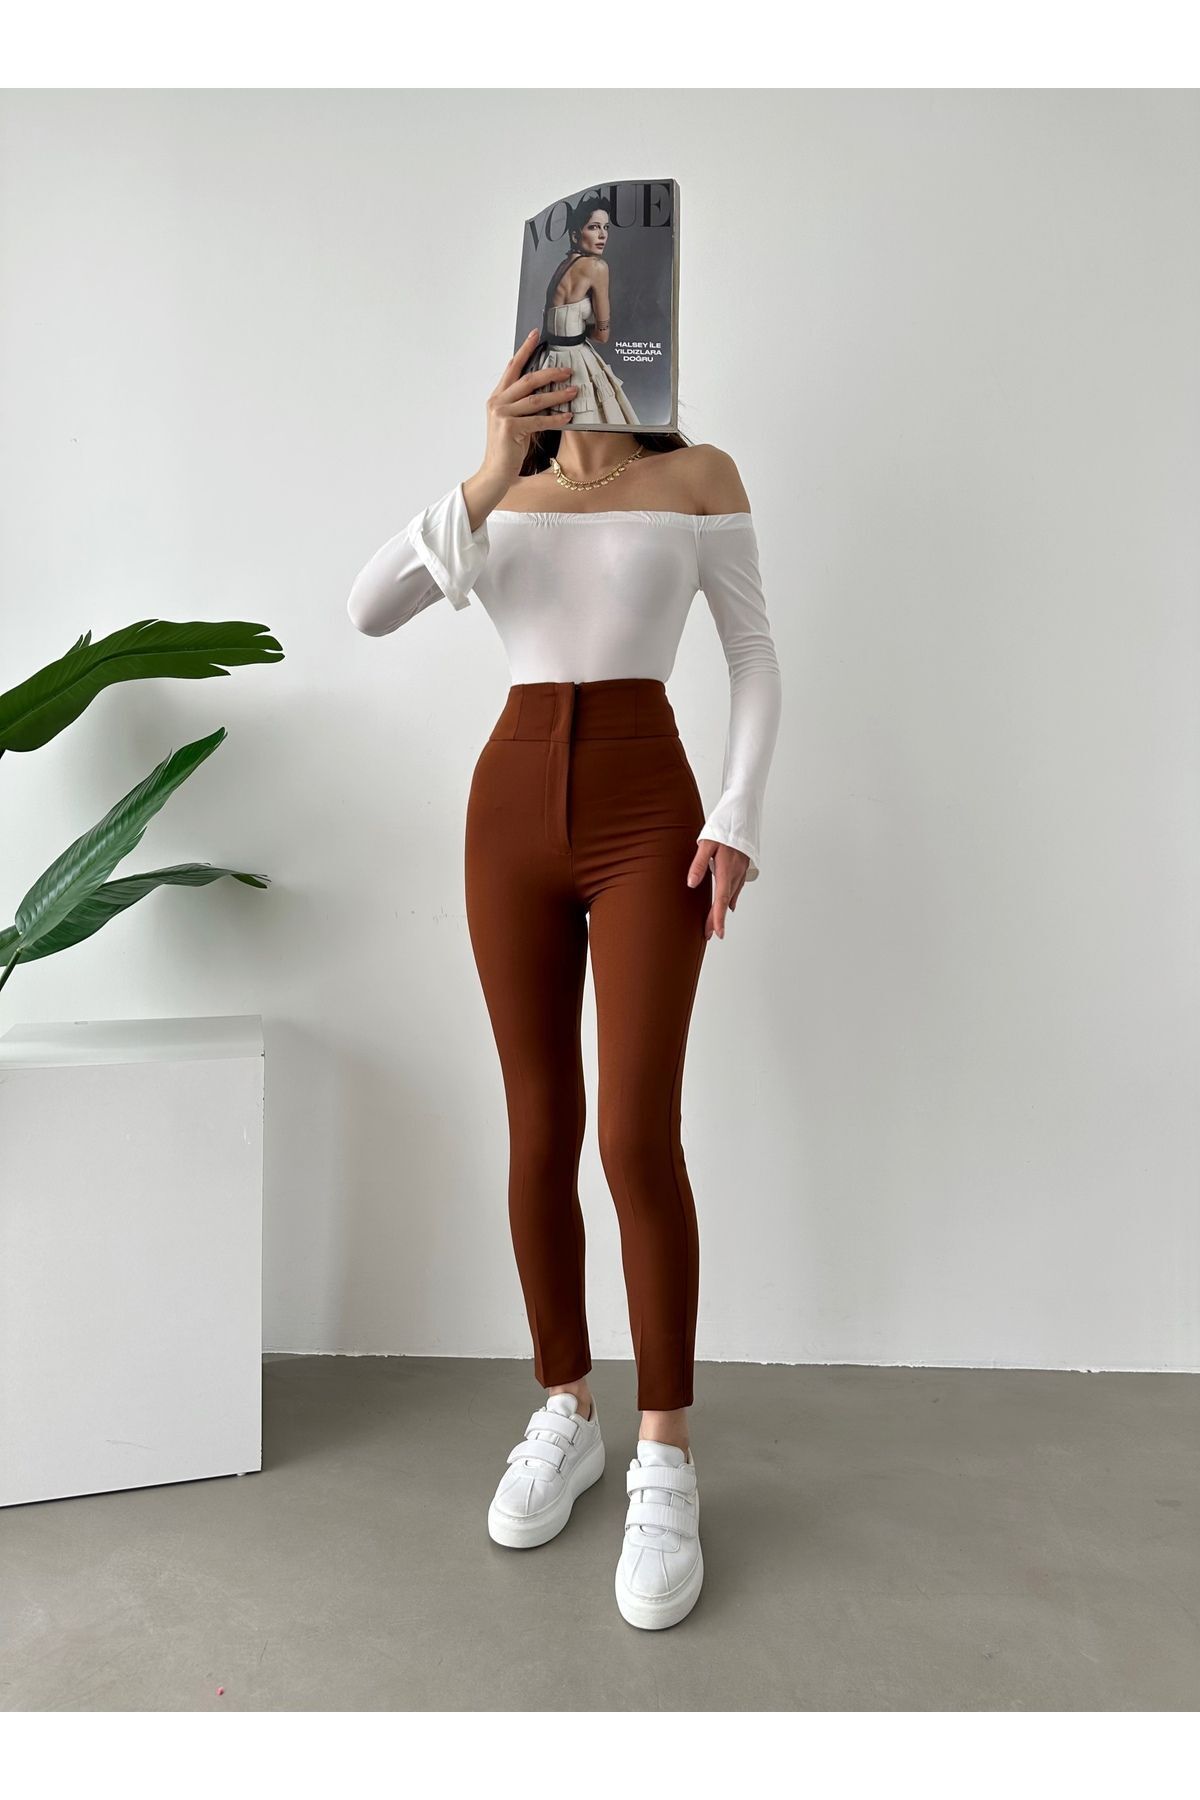 monlera Kadın Darpaça Yüksek Bel Likralı Kahve Rengi Kumaş Pantolon